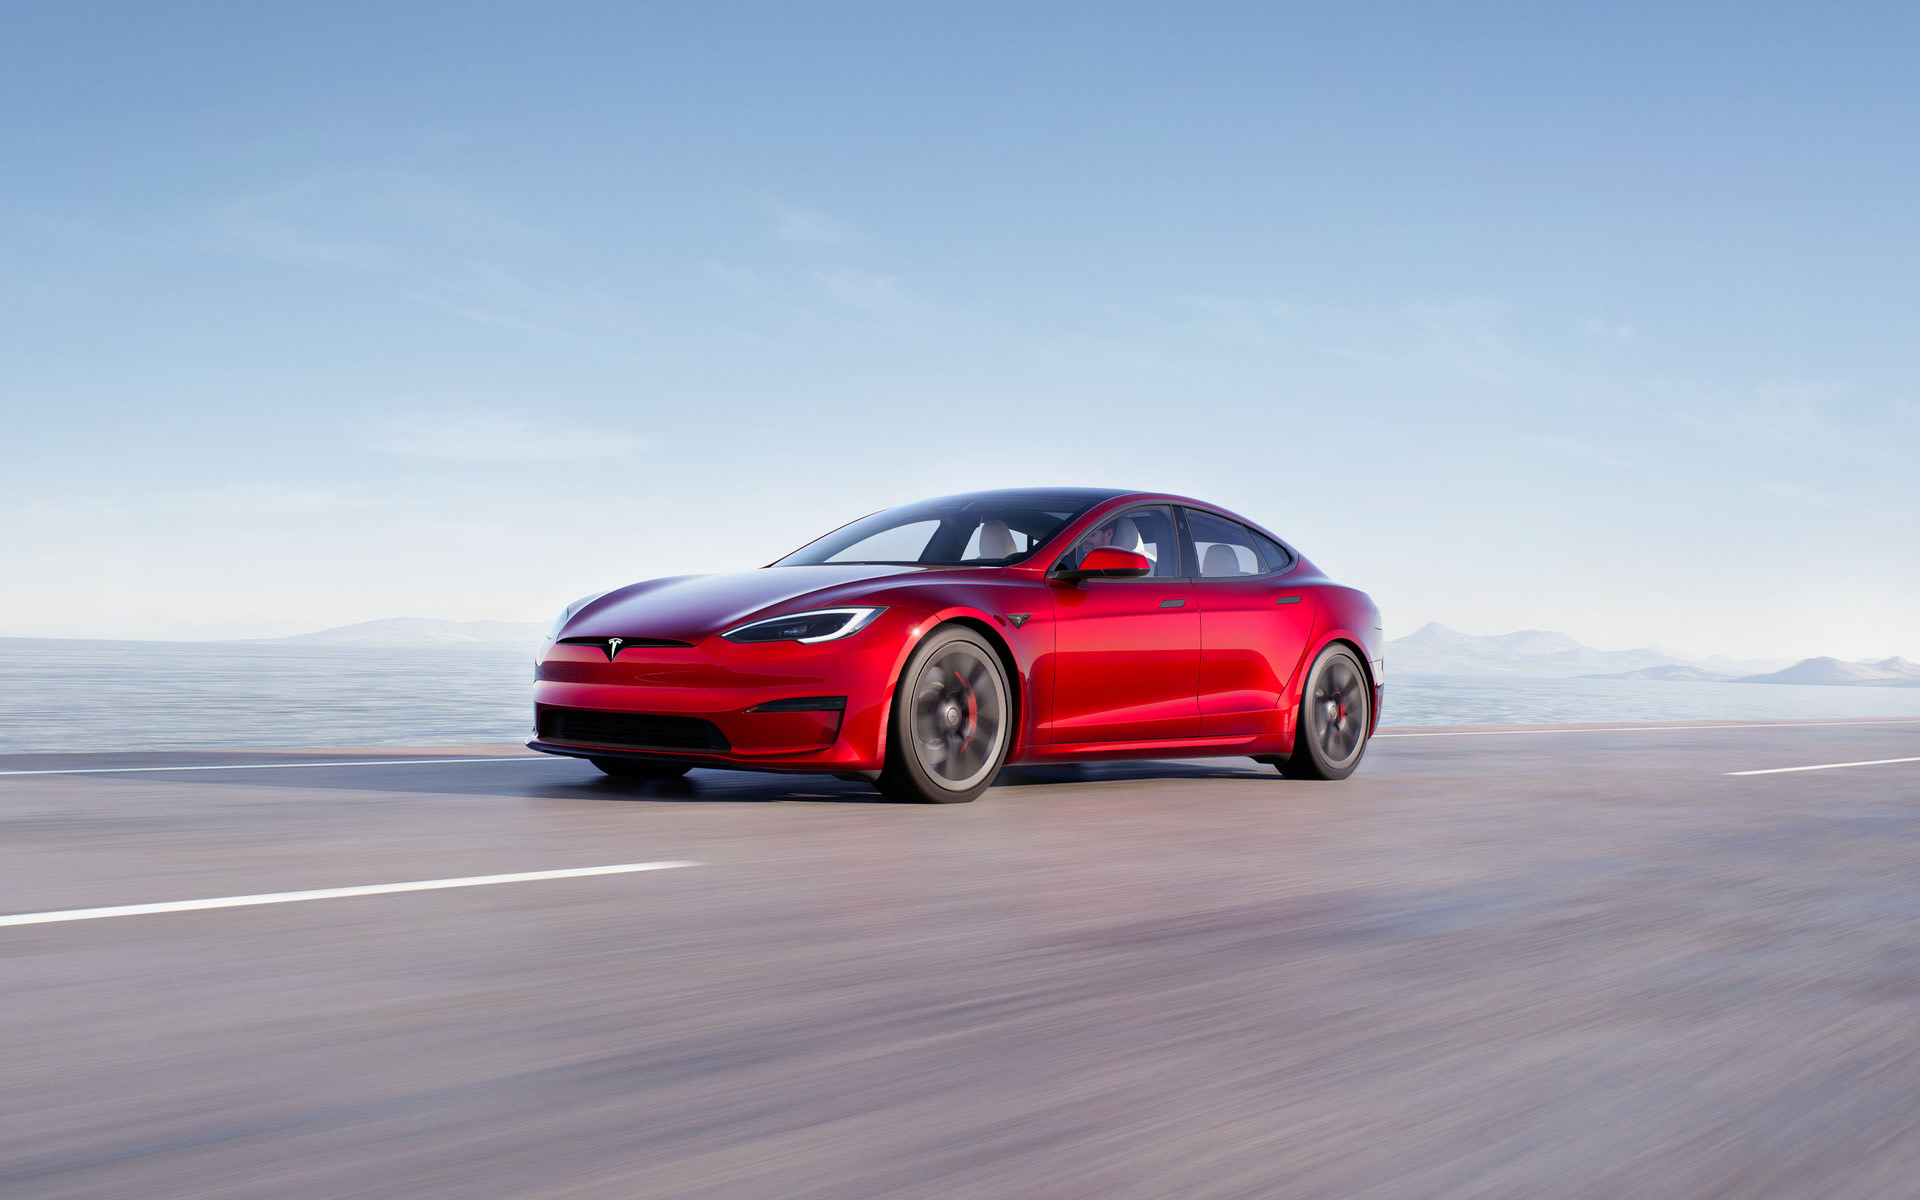 Model S boje Solid Black ubrzava na uzdignutoj autocesti	